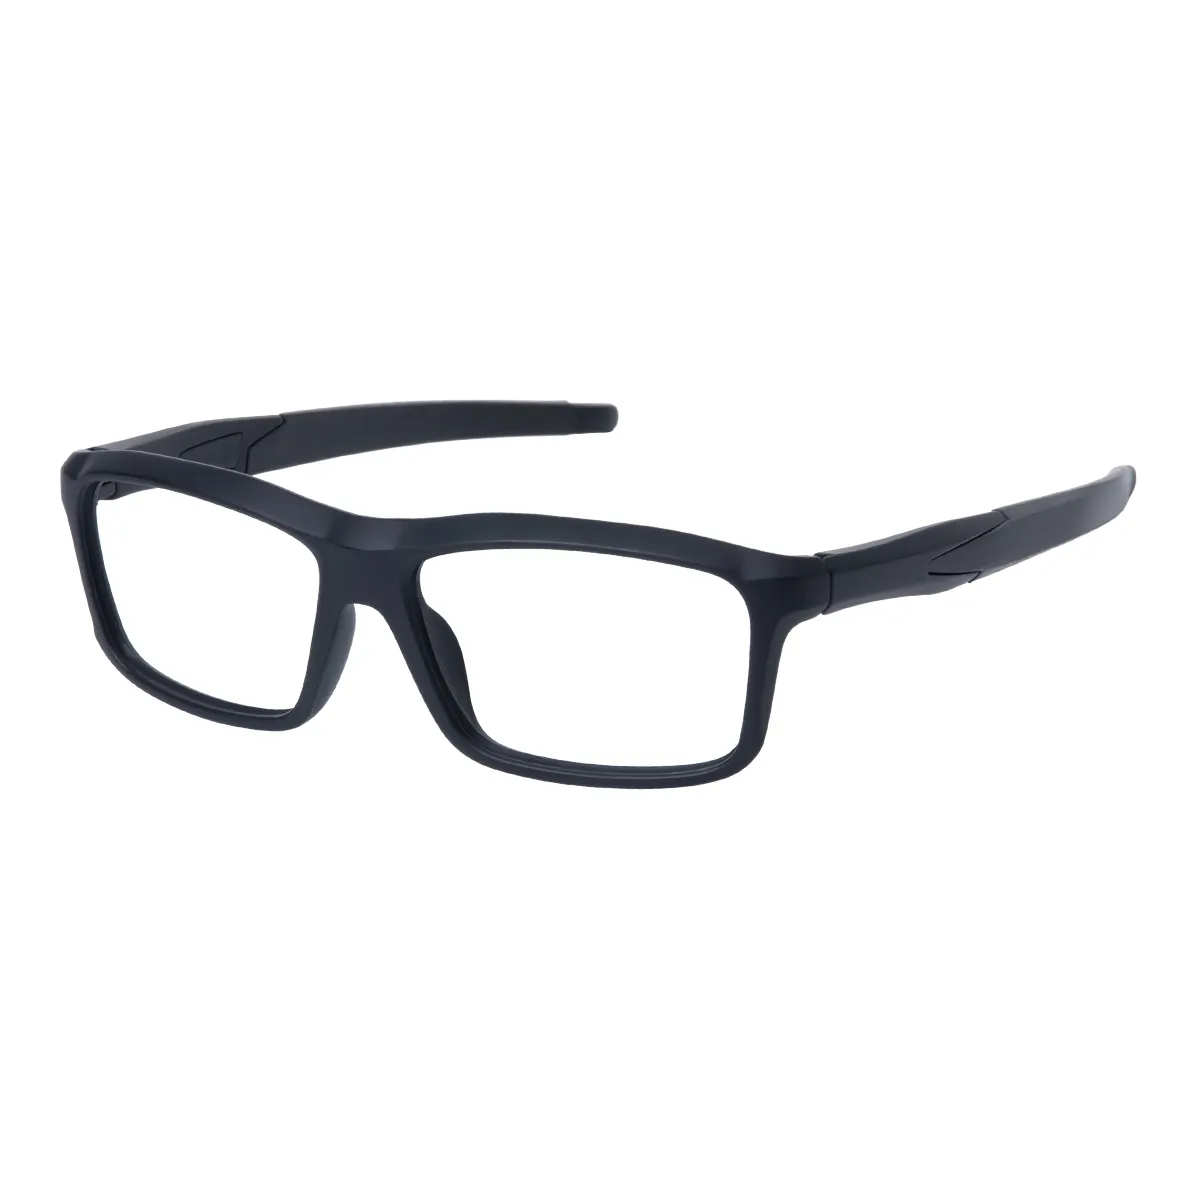 Jasper - Rectangle Black Glasses for Men & Women